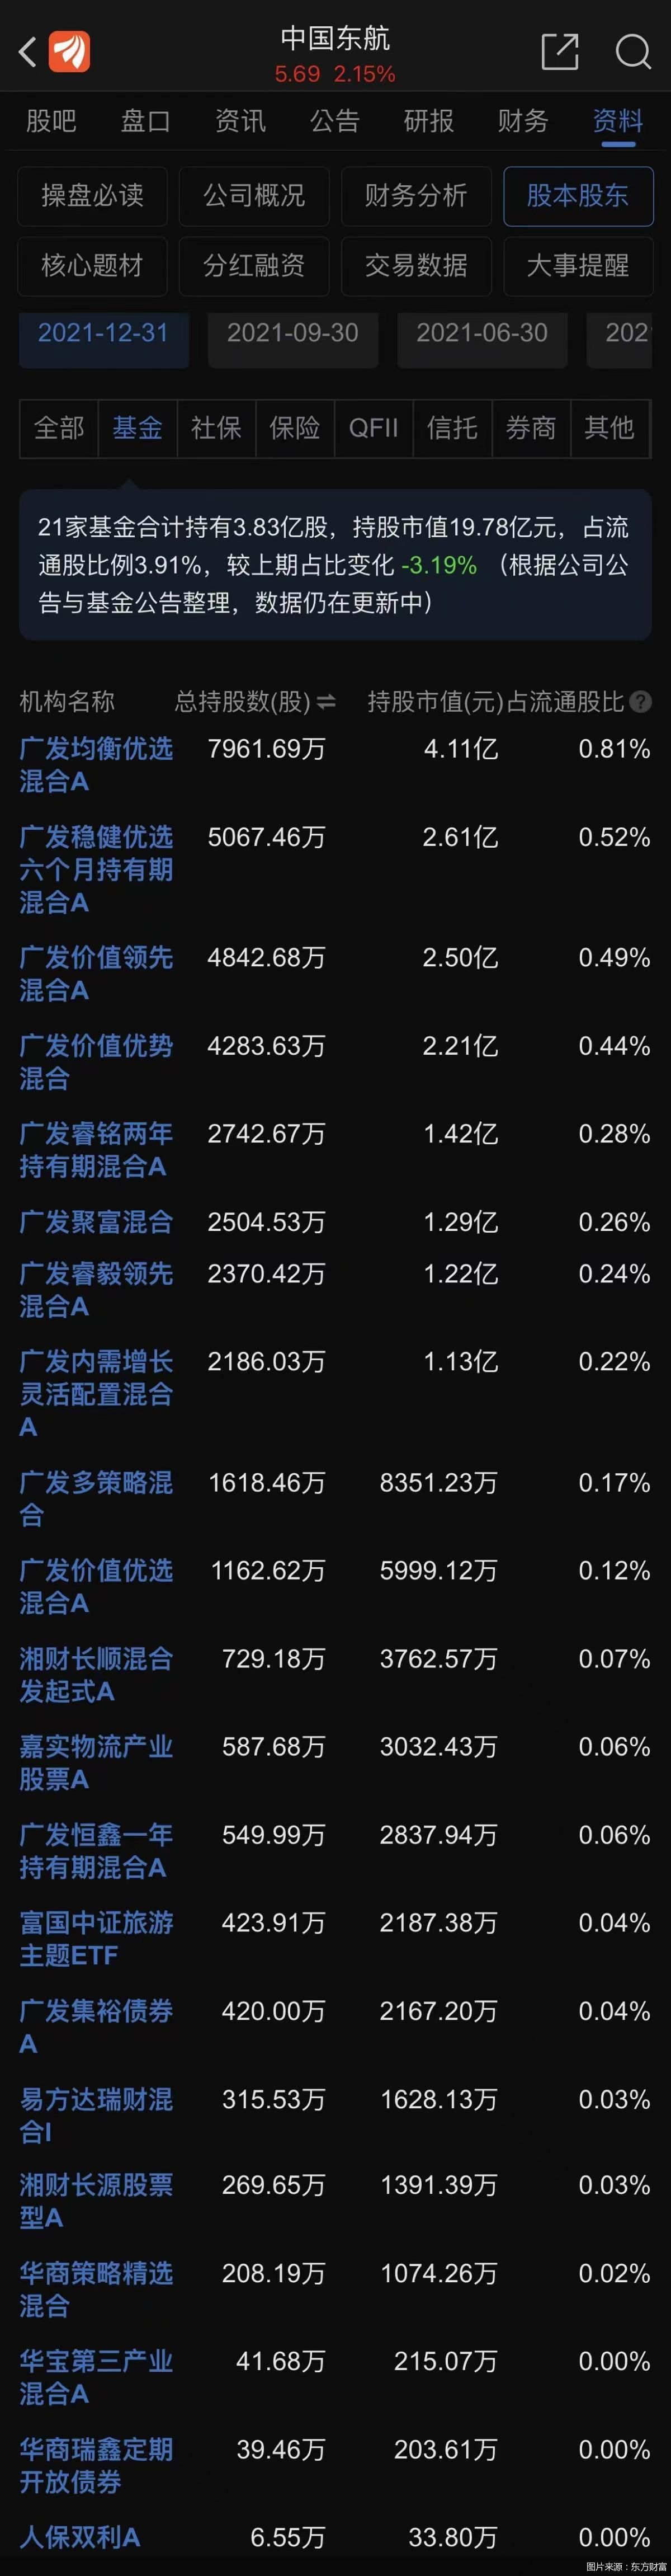 东航港股股价尾盘跳水跌超6% 这21只基金重仓了东航